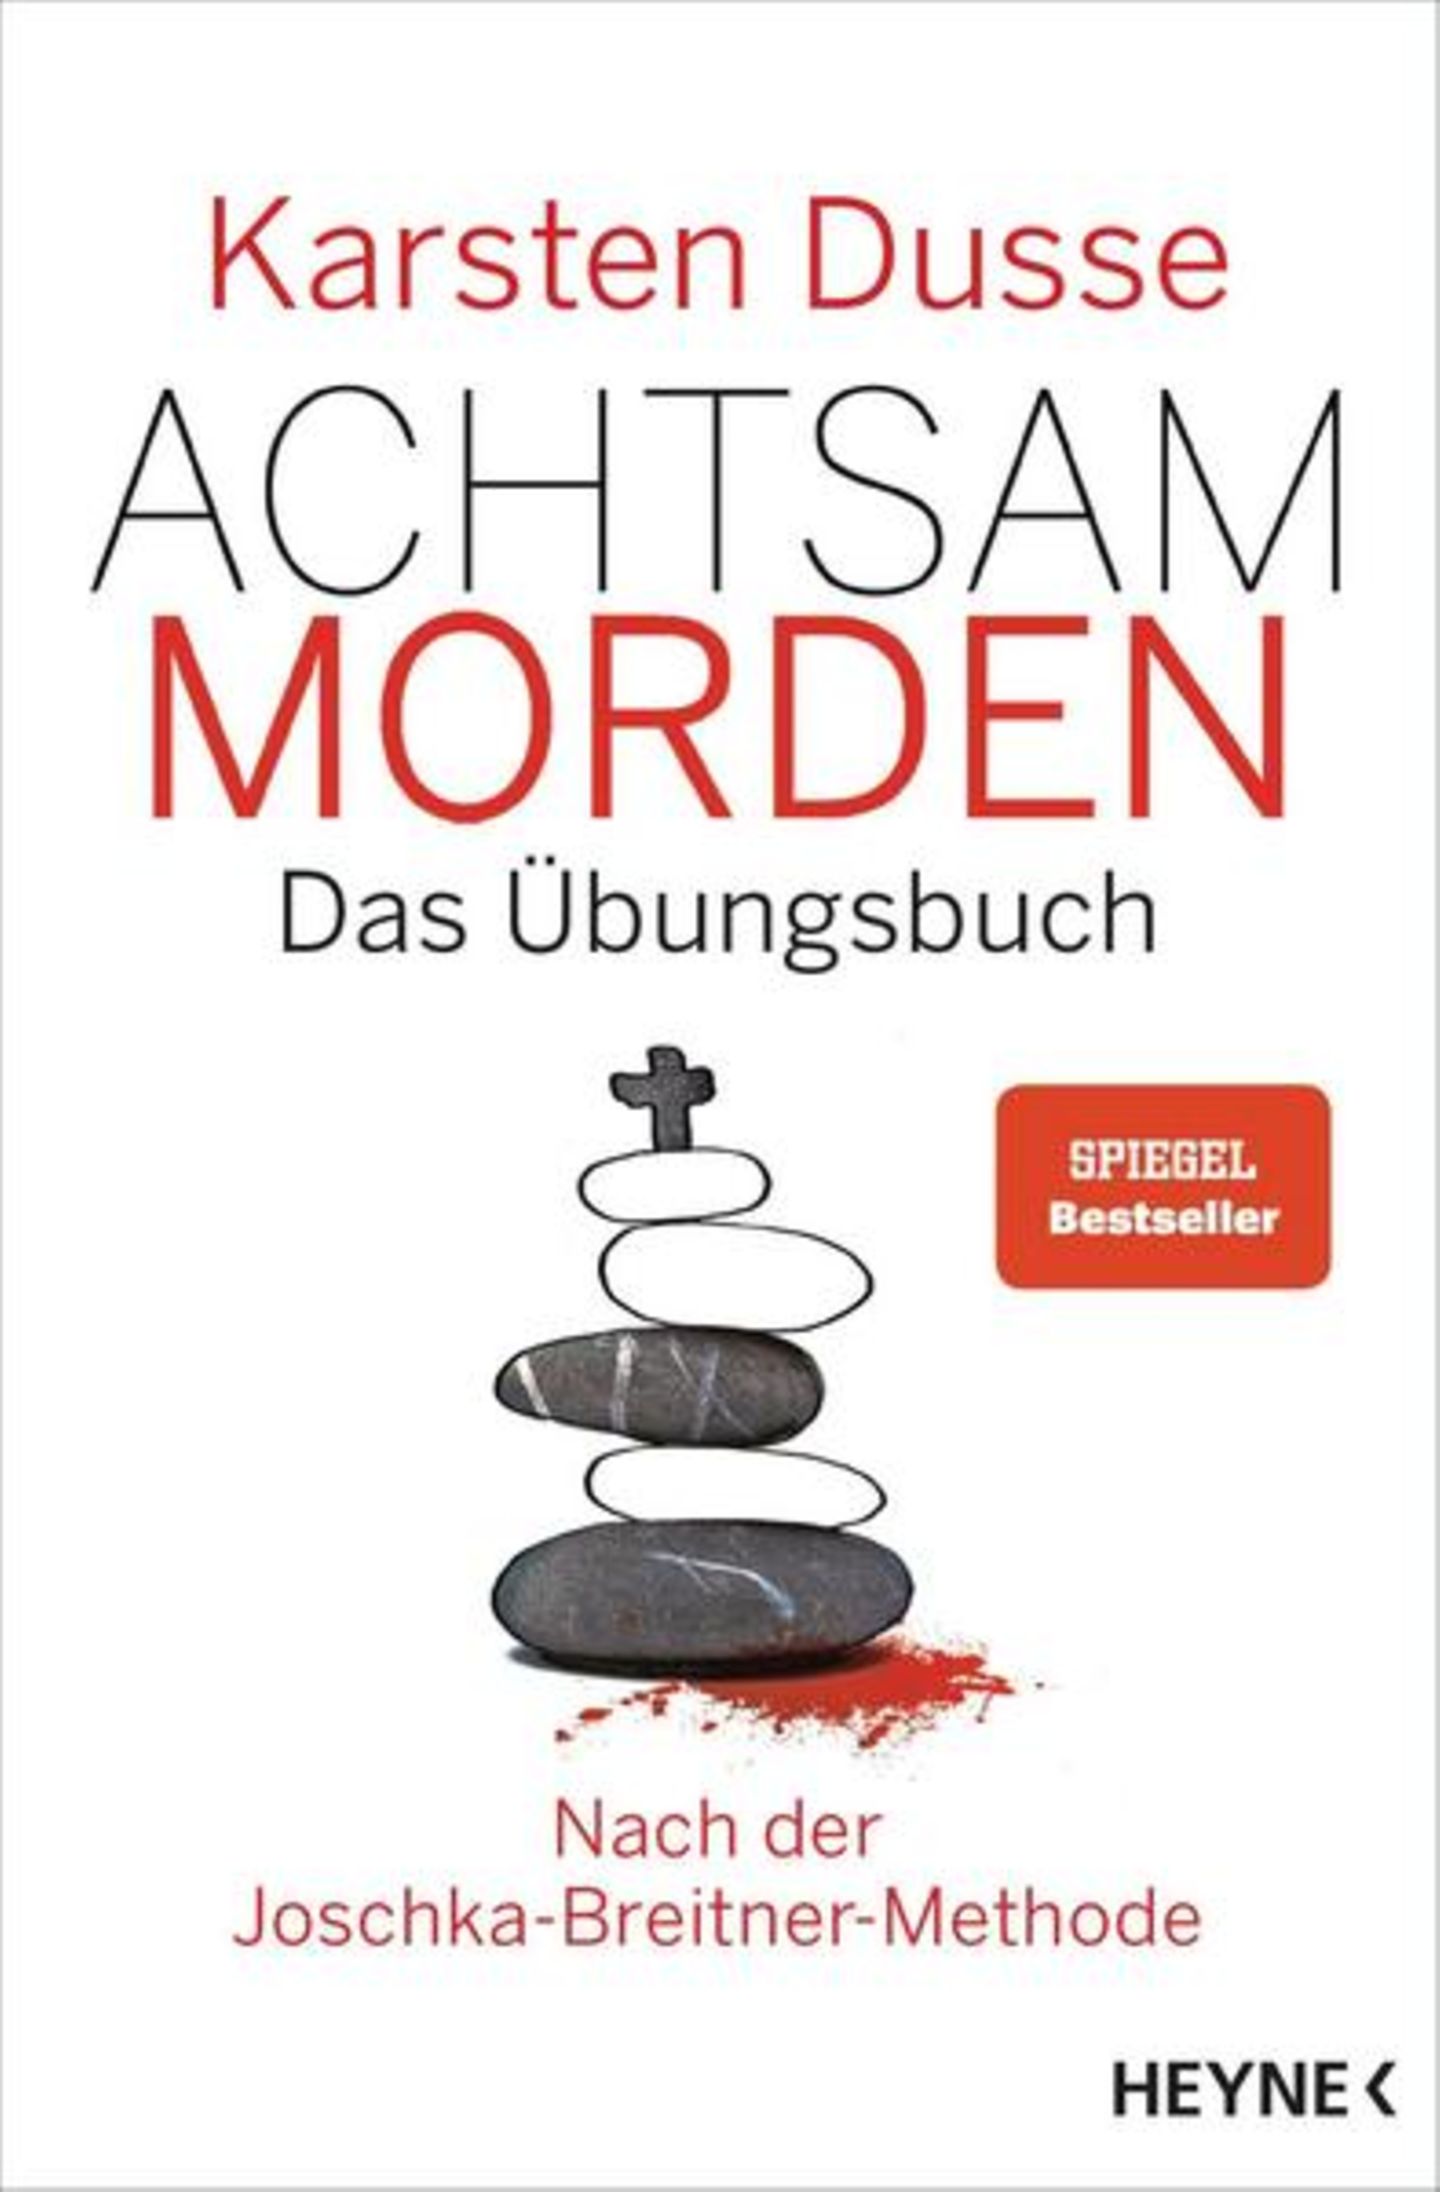 Buch-Charts Platz 8: Karsten Dusse "Achtsam morden - das Übungsbuch"